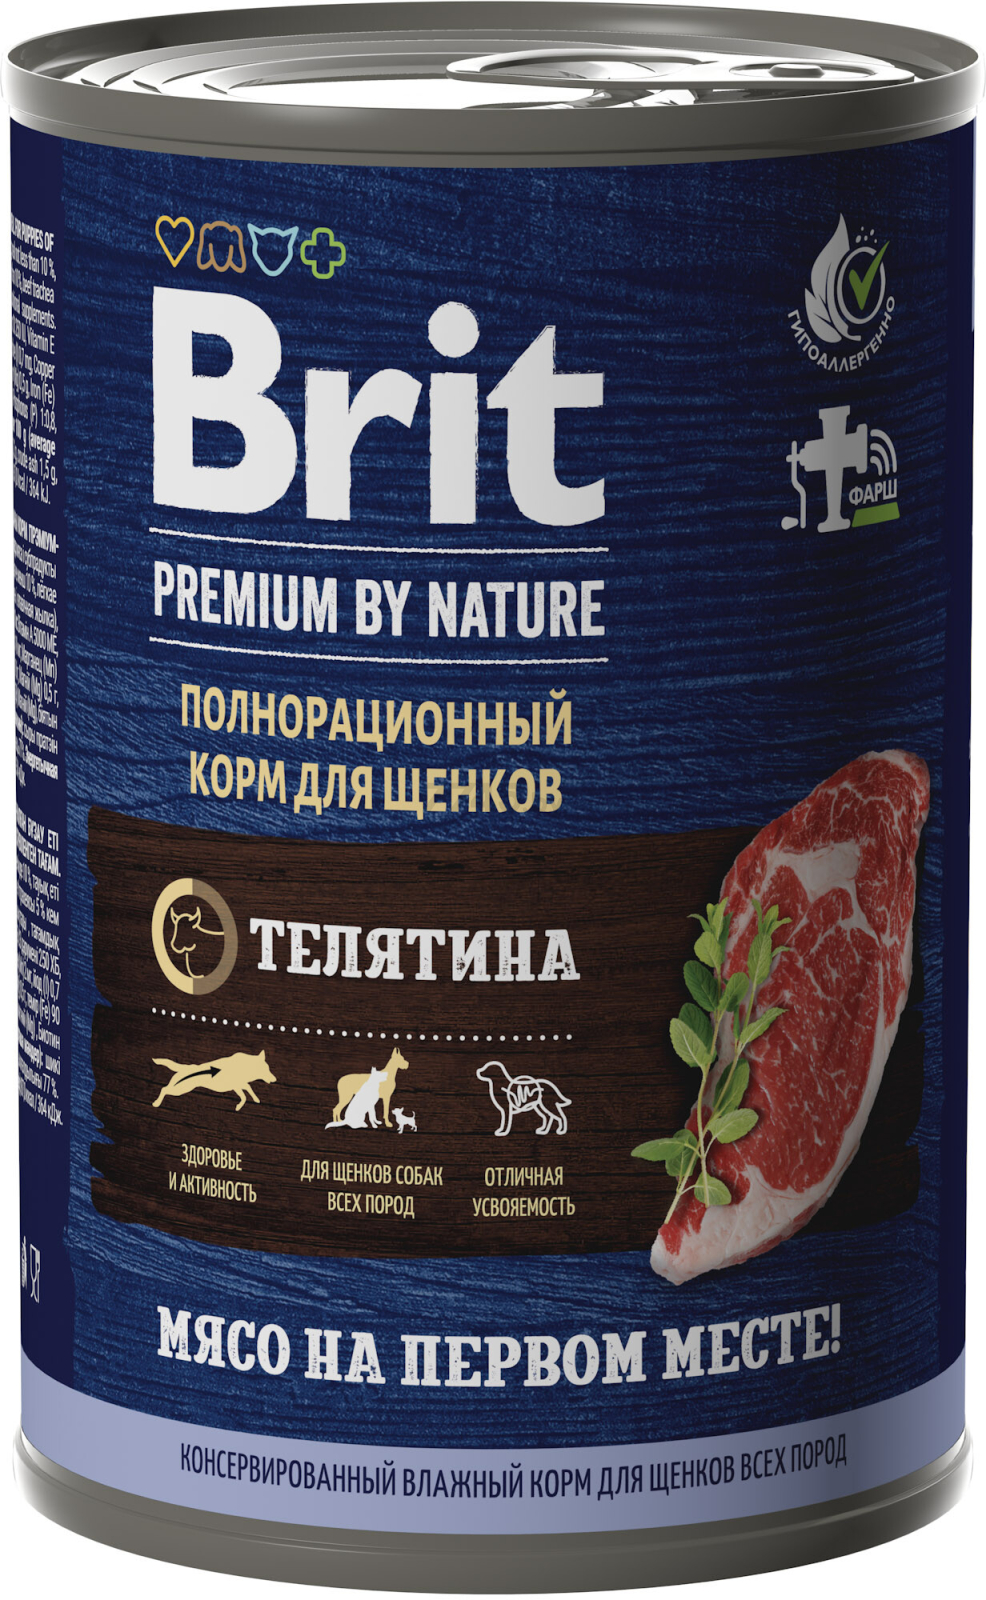 Влажный корм для щенков BRIT Premium by Nature телятина консерва 410 г (5051090)